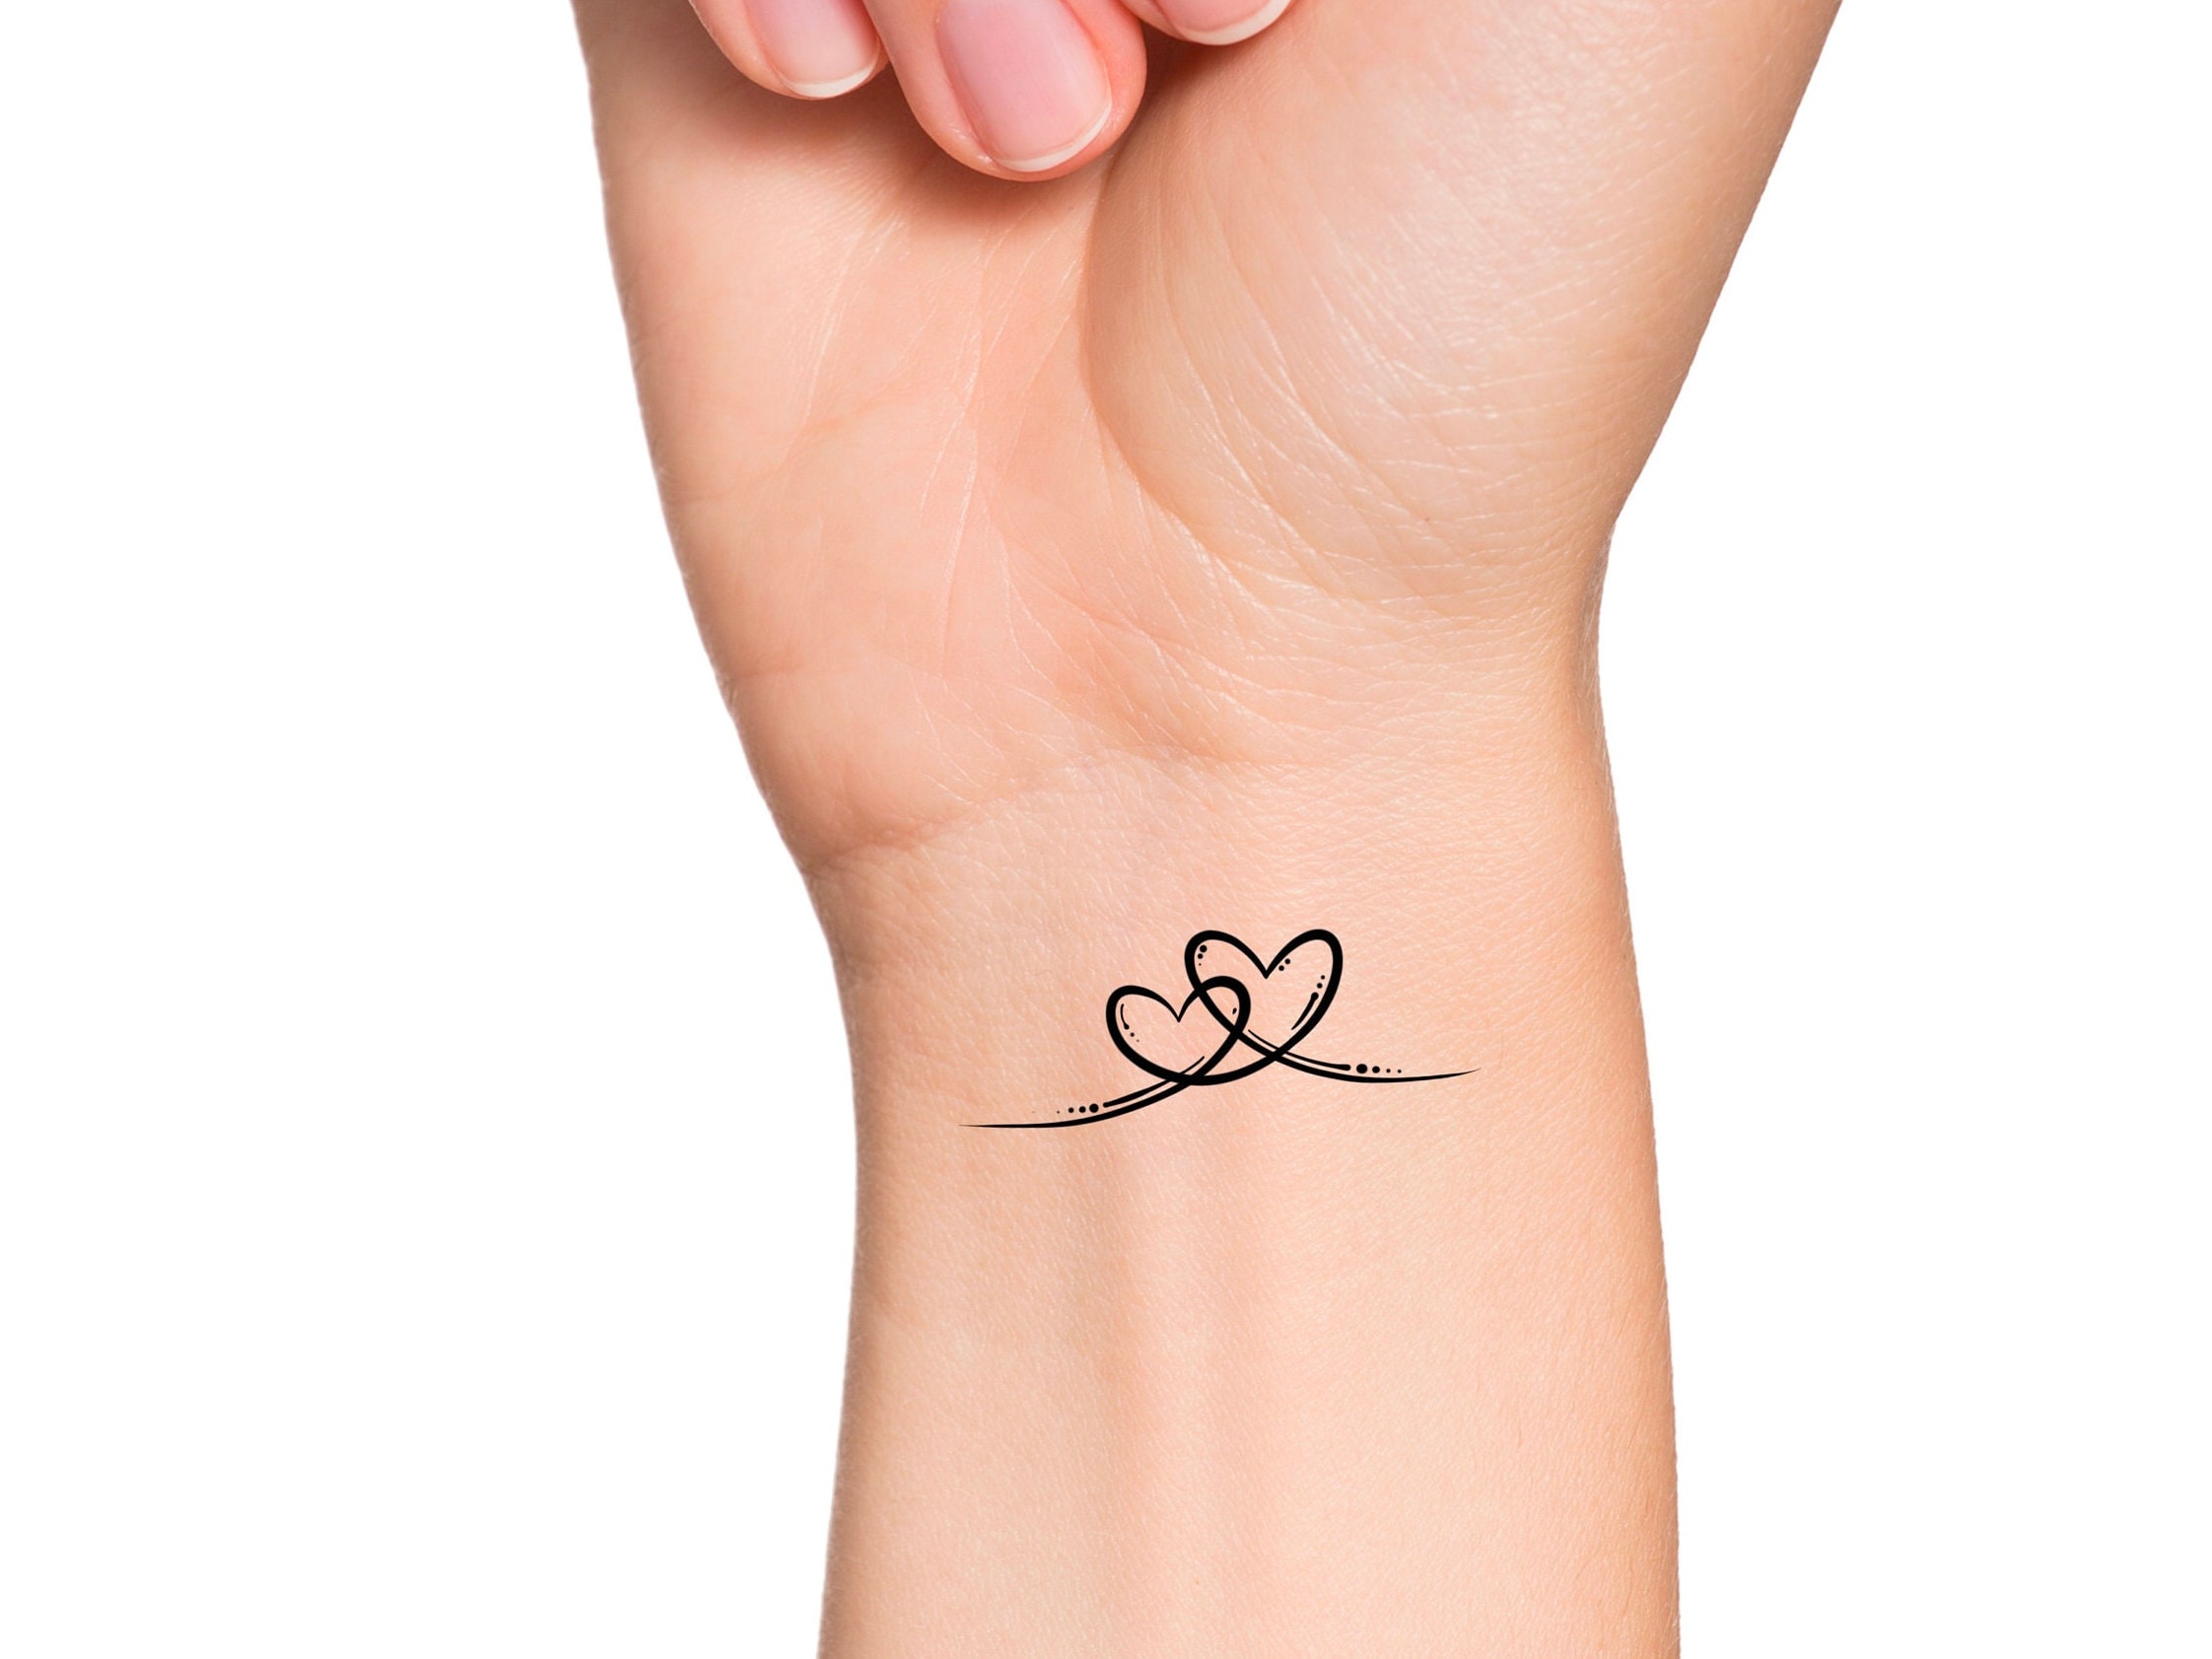 60 Pleasing Initials Tattoos On Wrist  Tattoo Designs  TattoosBagcom